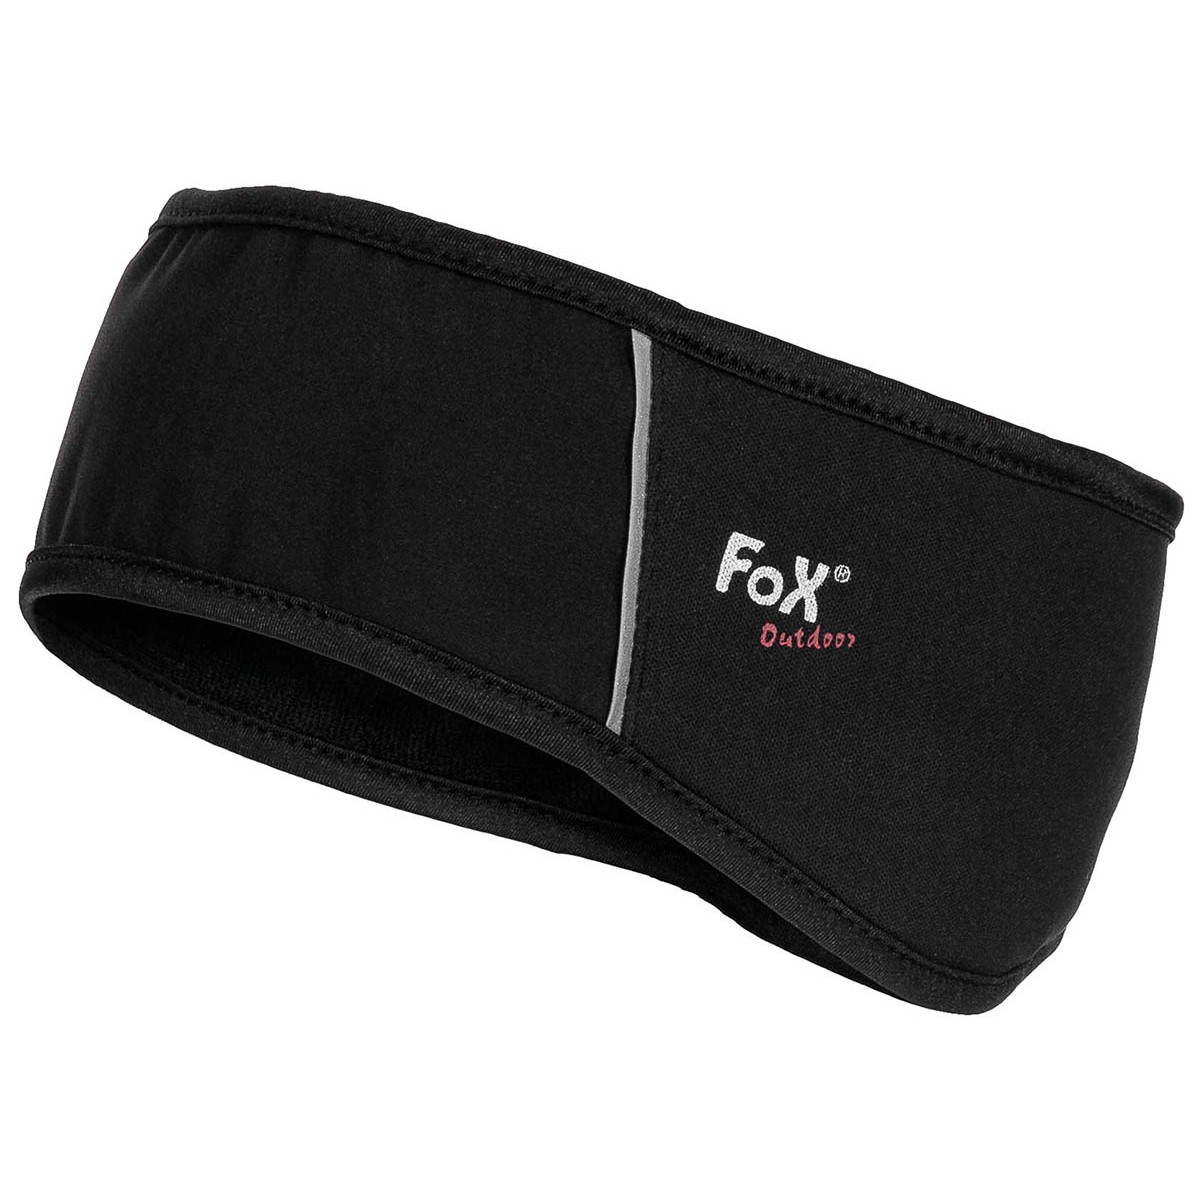 Čelenka softshellová Fox Soft Shell - černá, L/XL